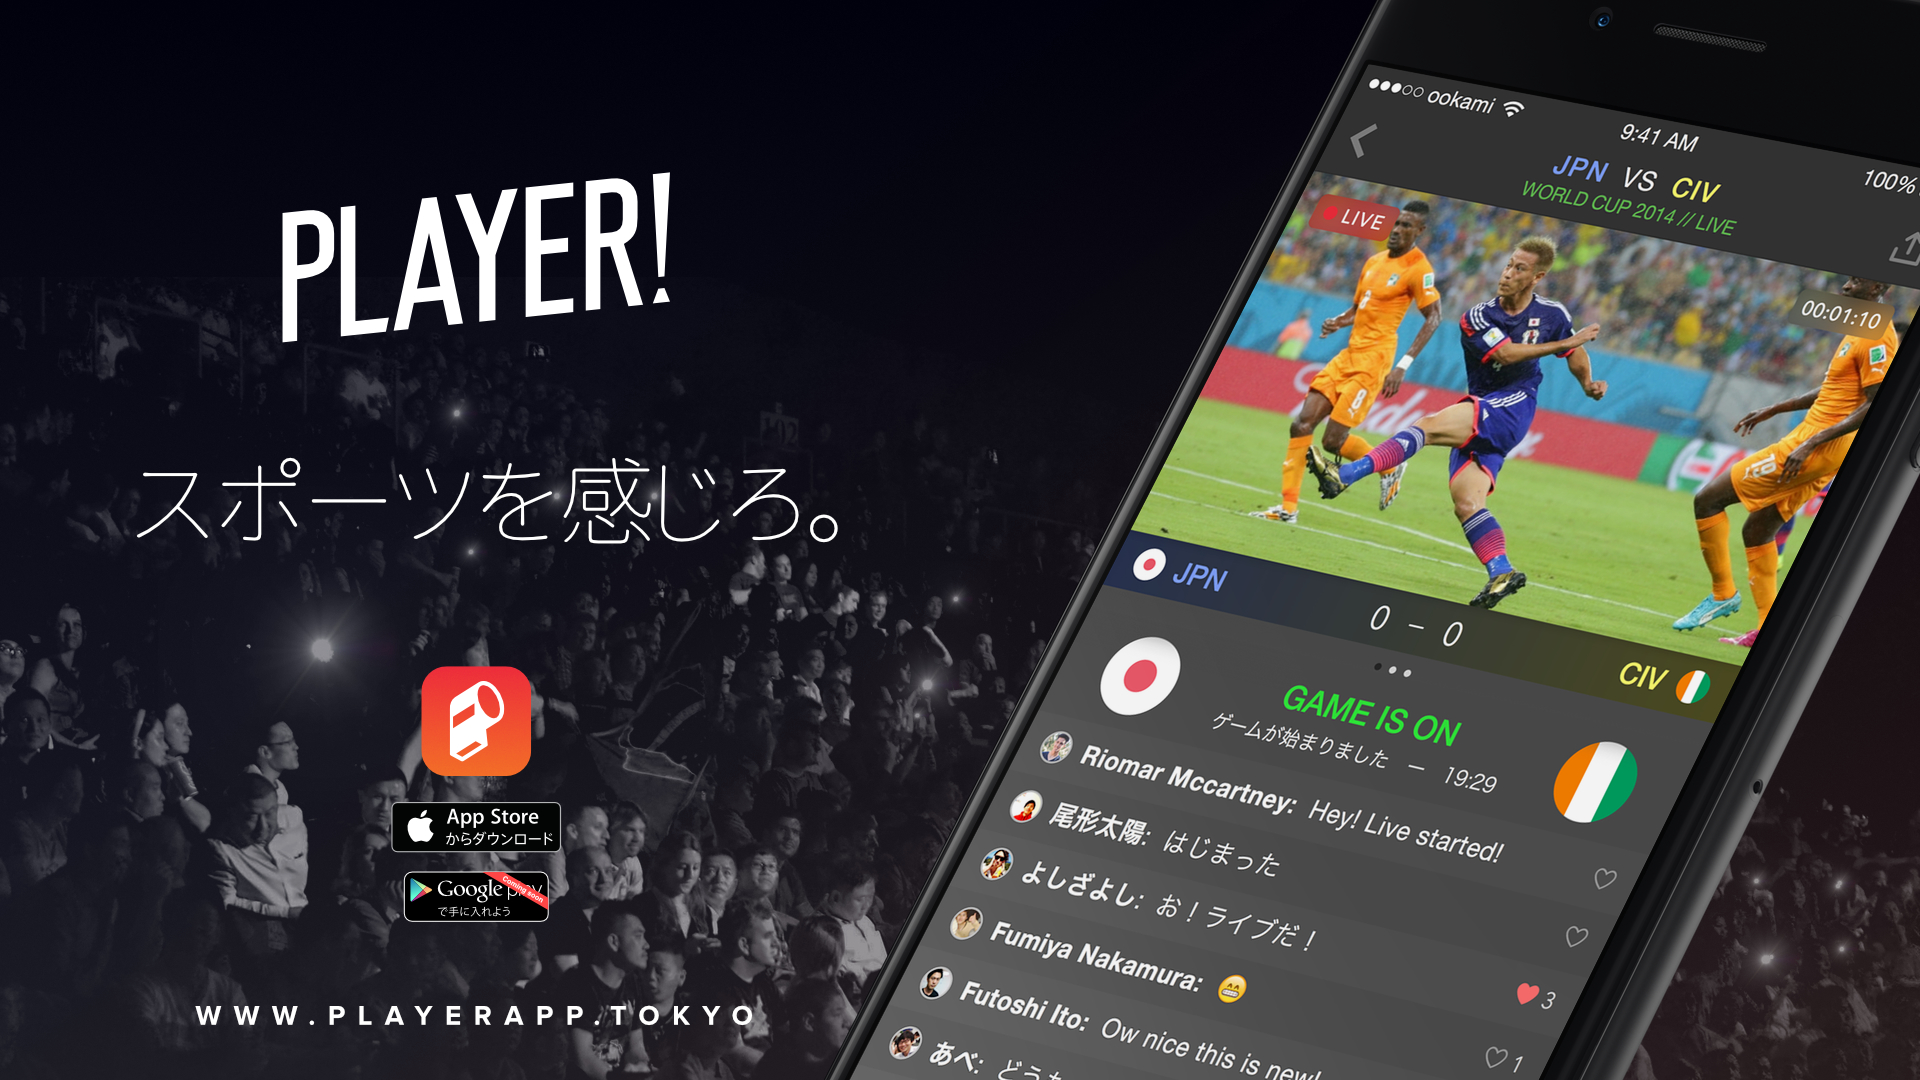 ライブ共有型スポーツニュースアプリ Player スマホでライブスポーツの熱狂を共有できる Live 機能を Iphone 版にて先行提供開始 Ookamiのプレスリリース